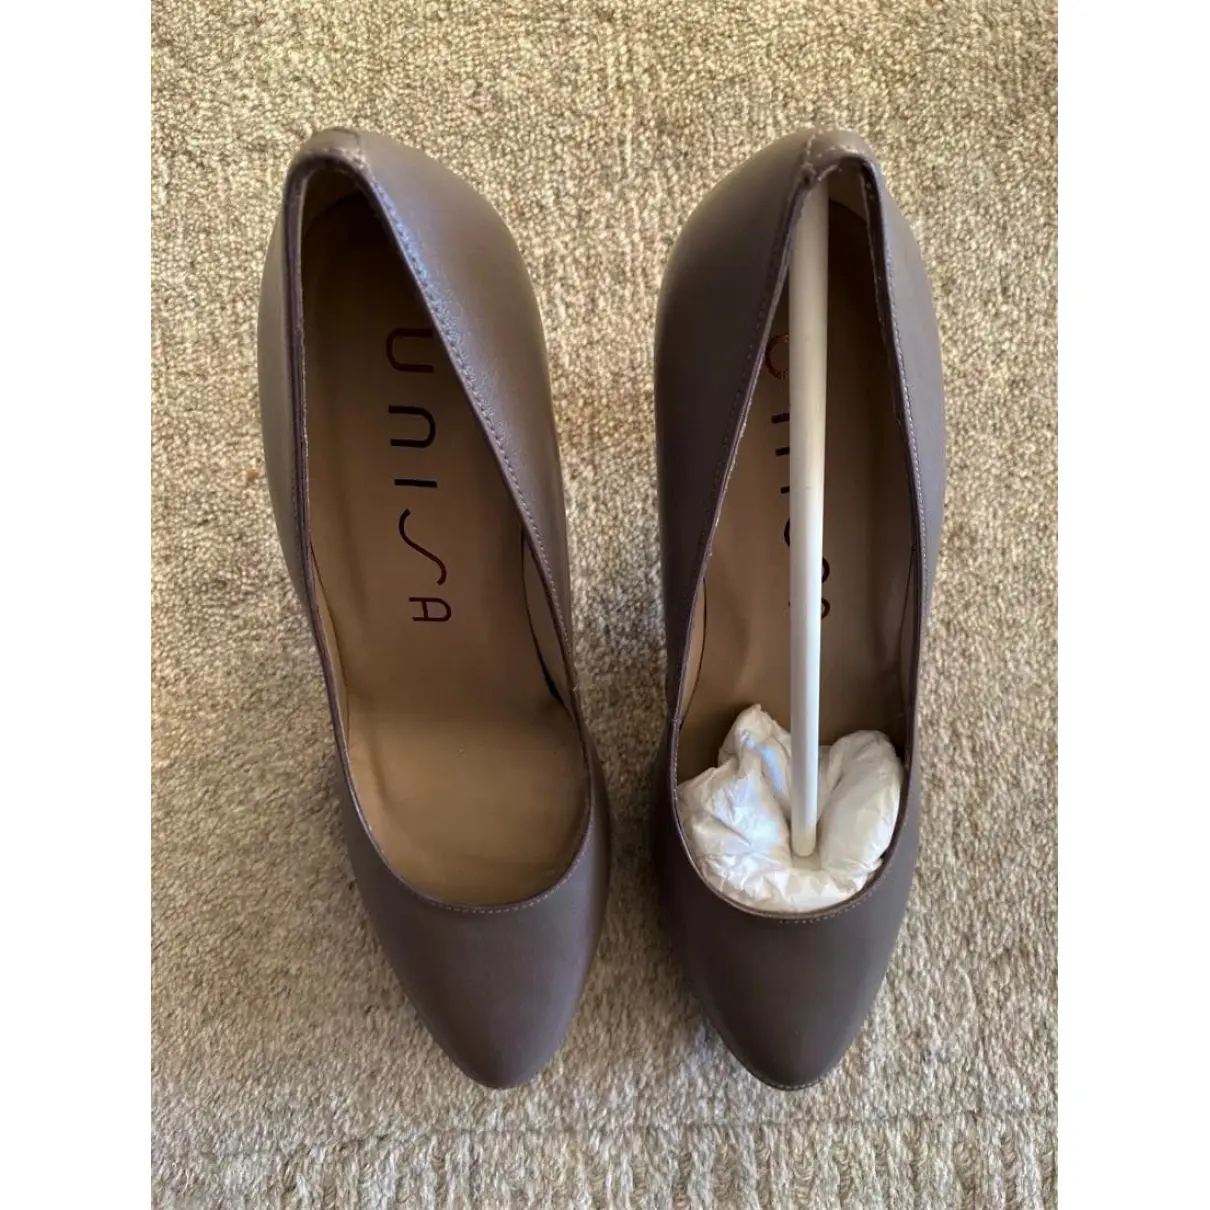 Buy Unisa Leather heels online